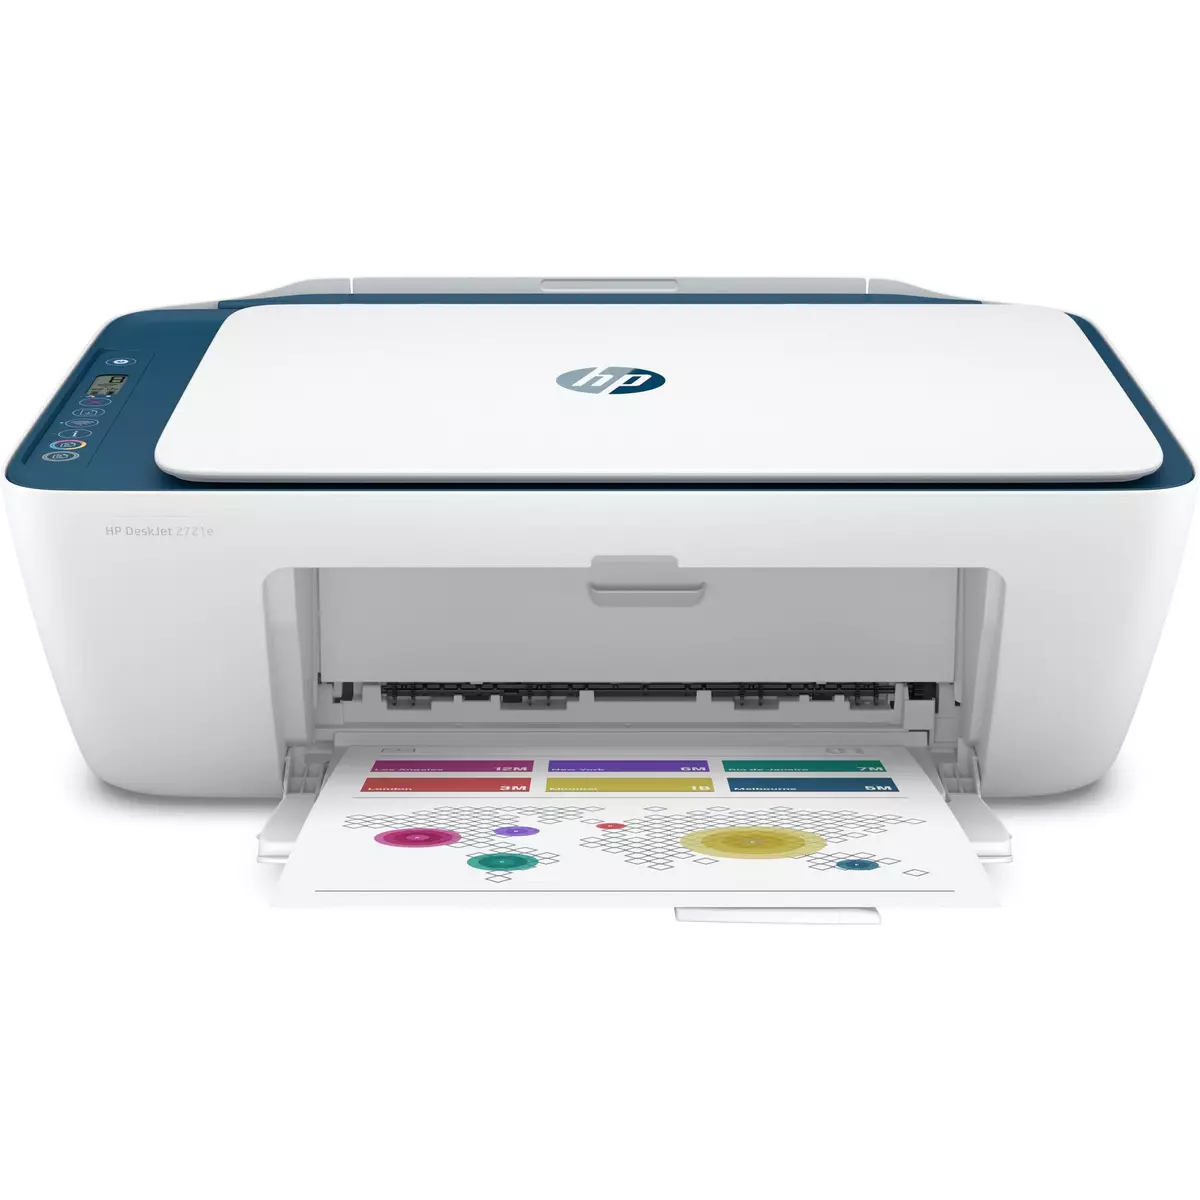 Imprimante jet d'encre HP Envy 6032e éligible Instant Ink +